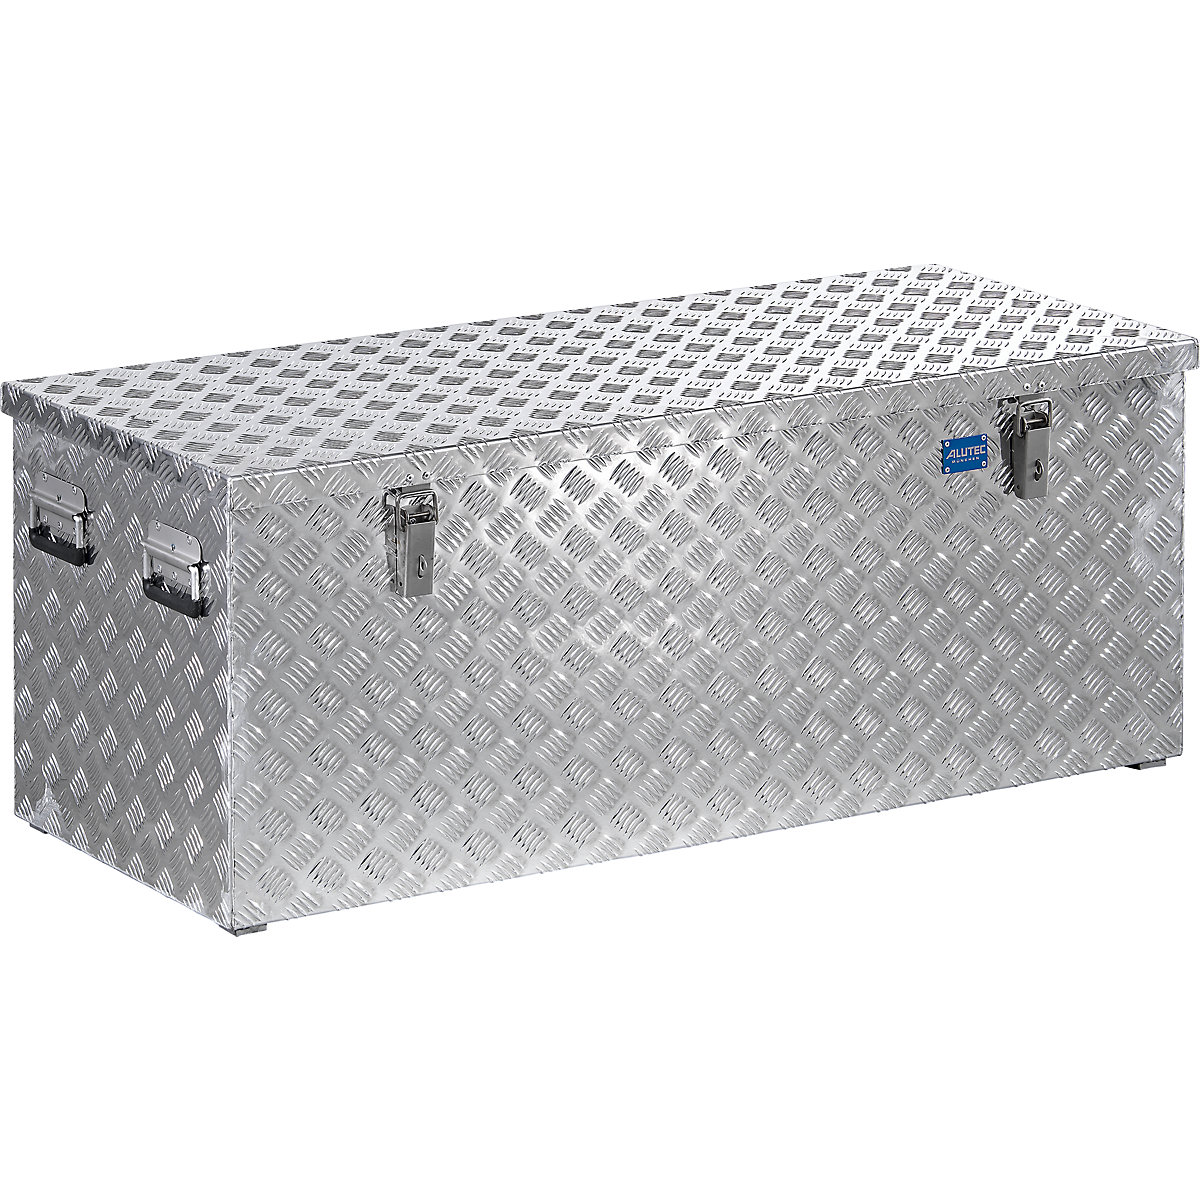 Aluminijski transportni kovčeg s rebrastim limom, s plinskim prigušnikom, volumen 312 l-16